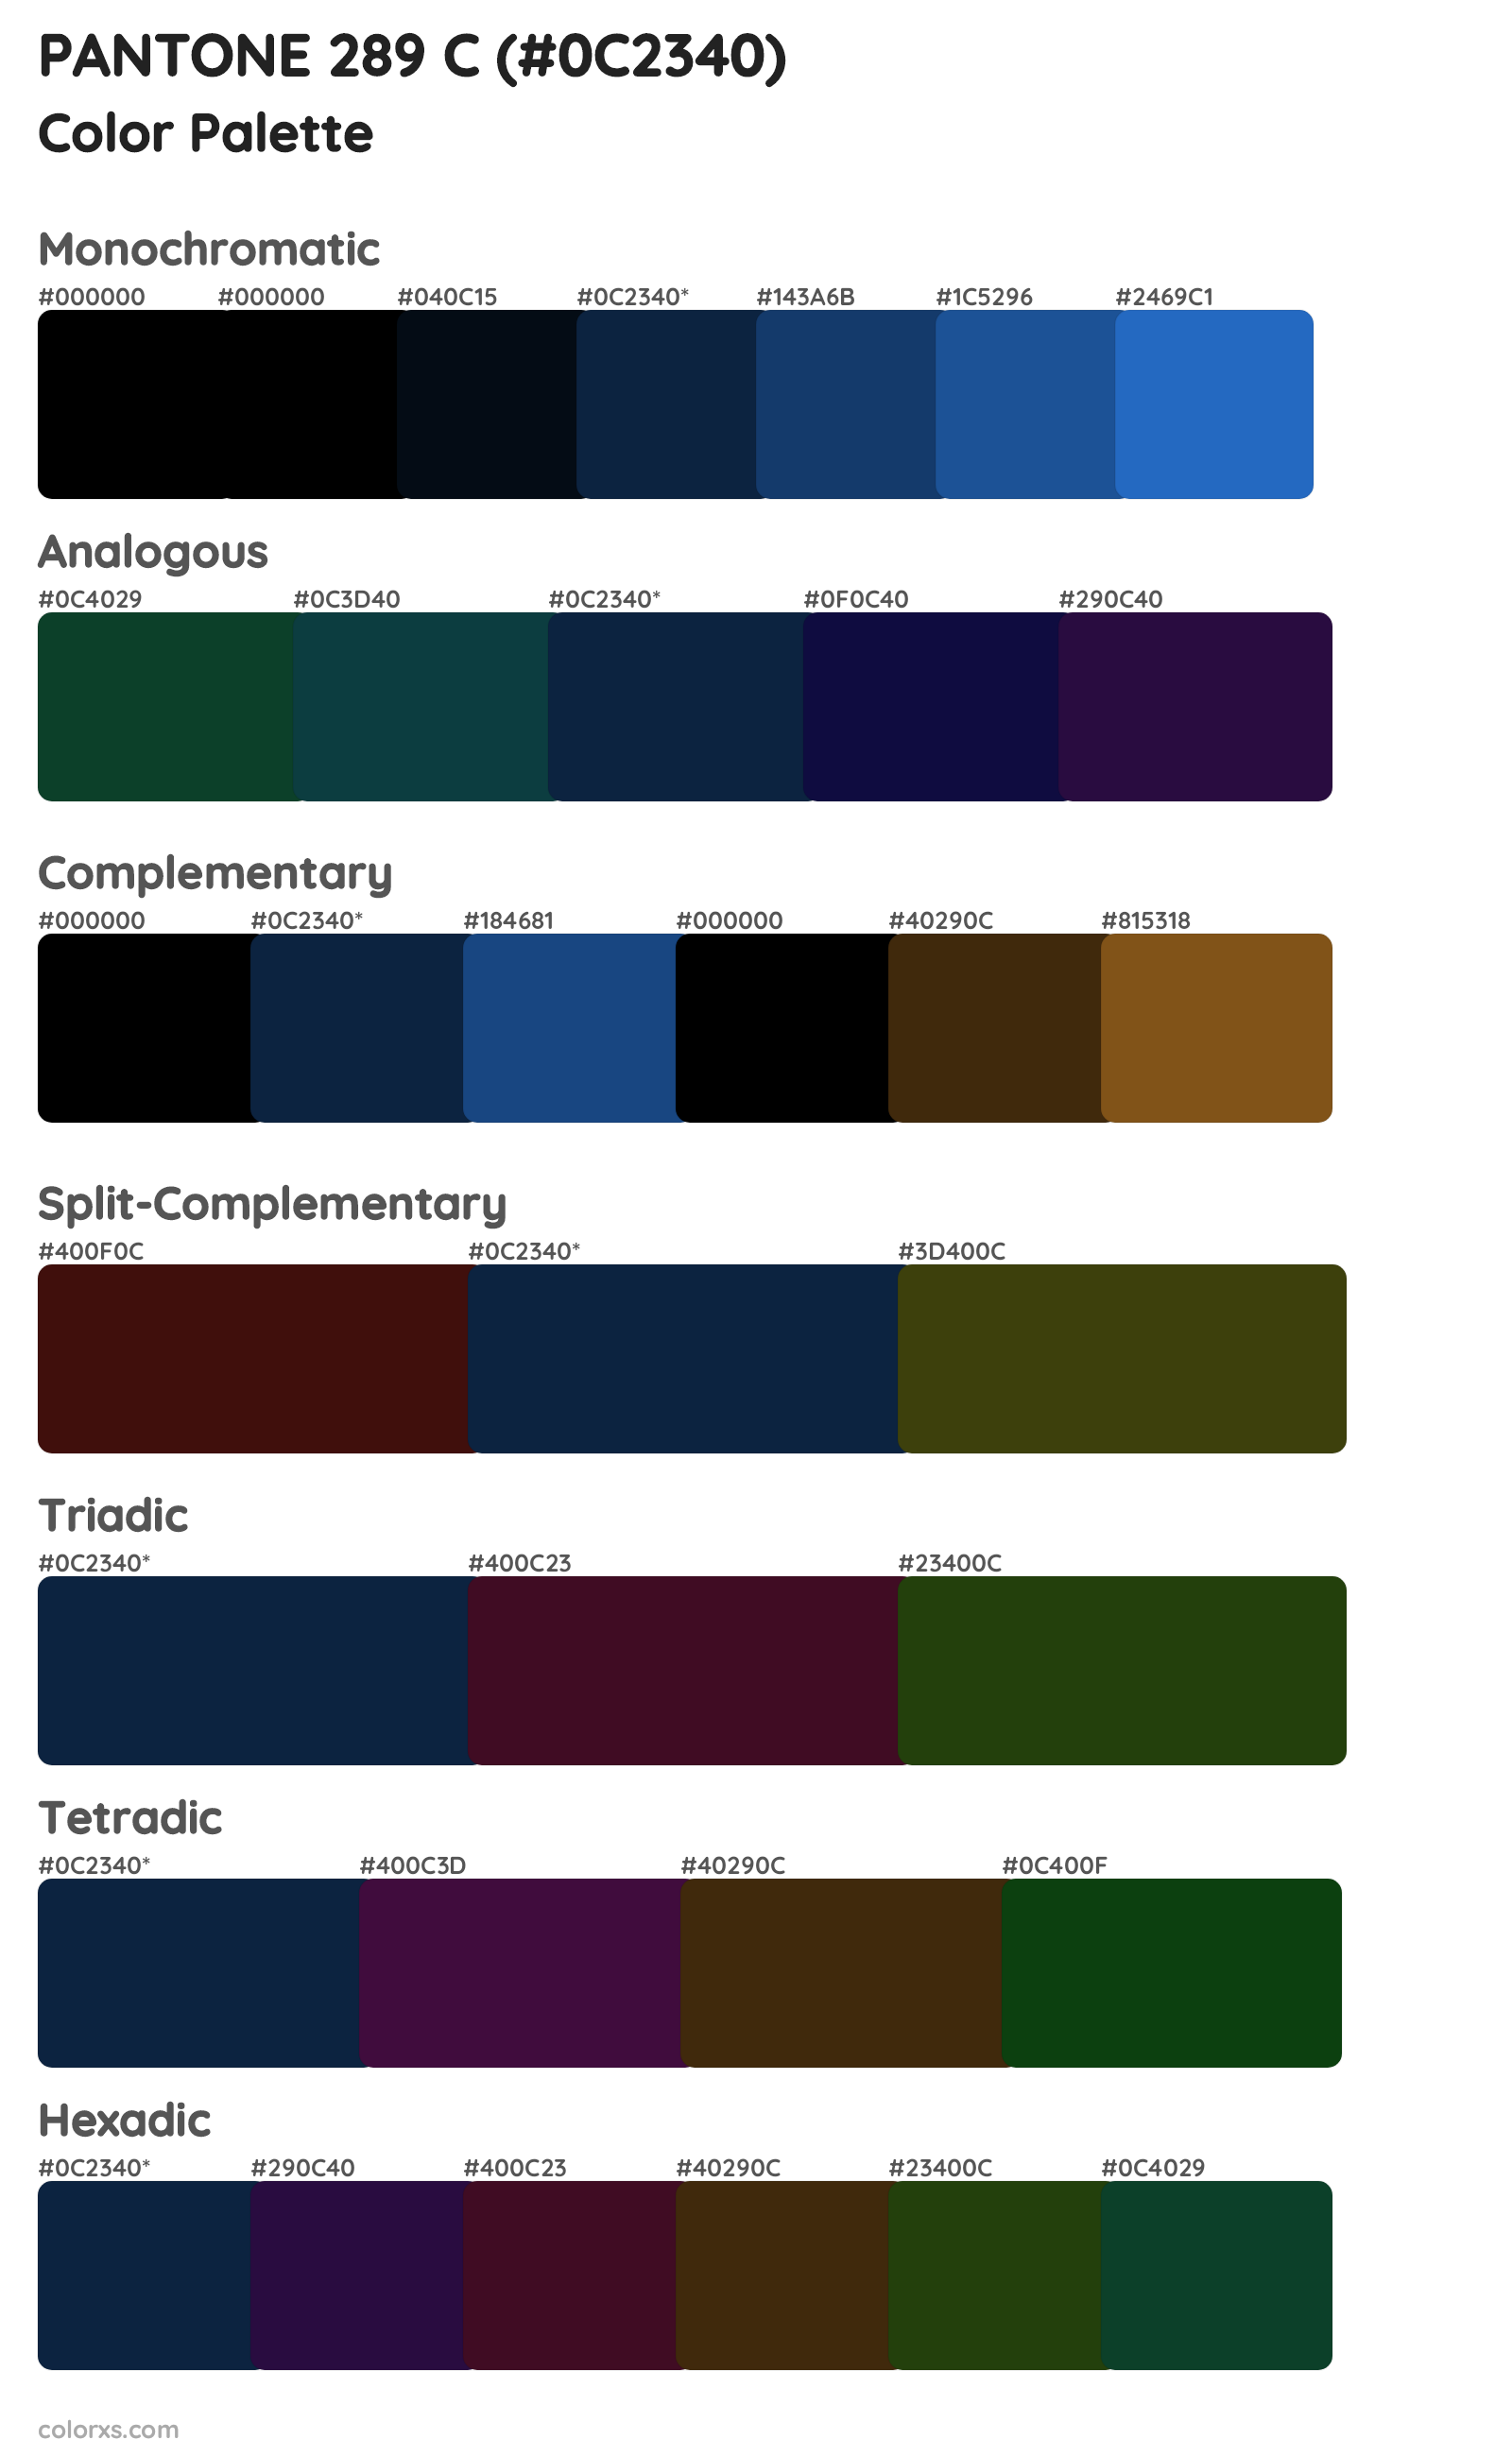 PANTONE 289 C Color Scheme Palettes